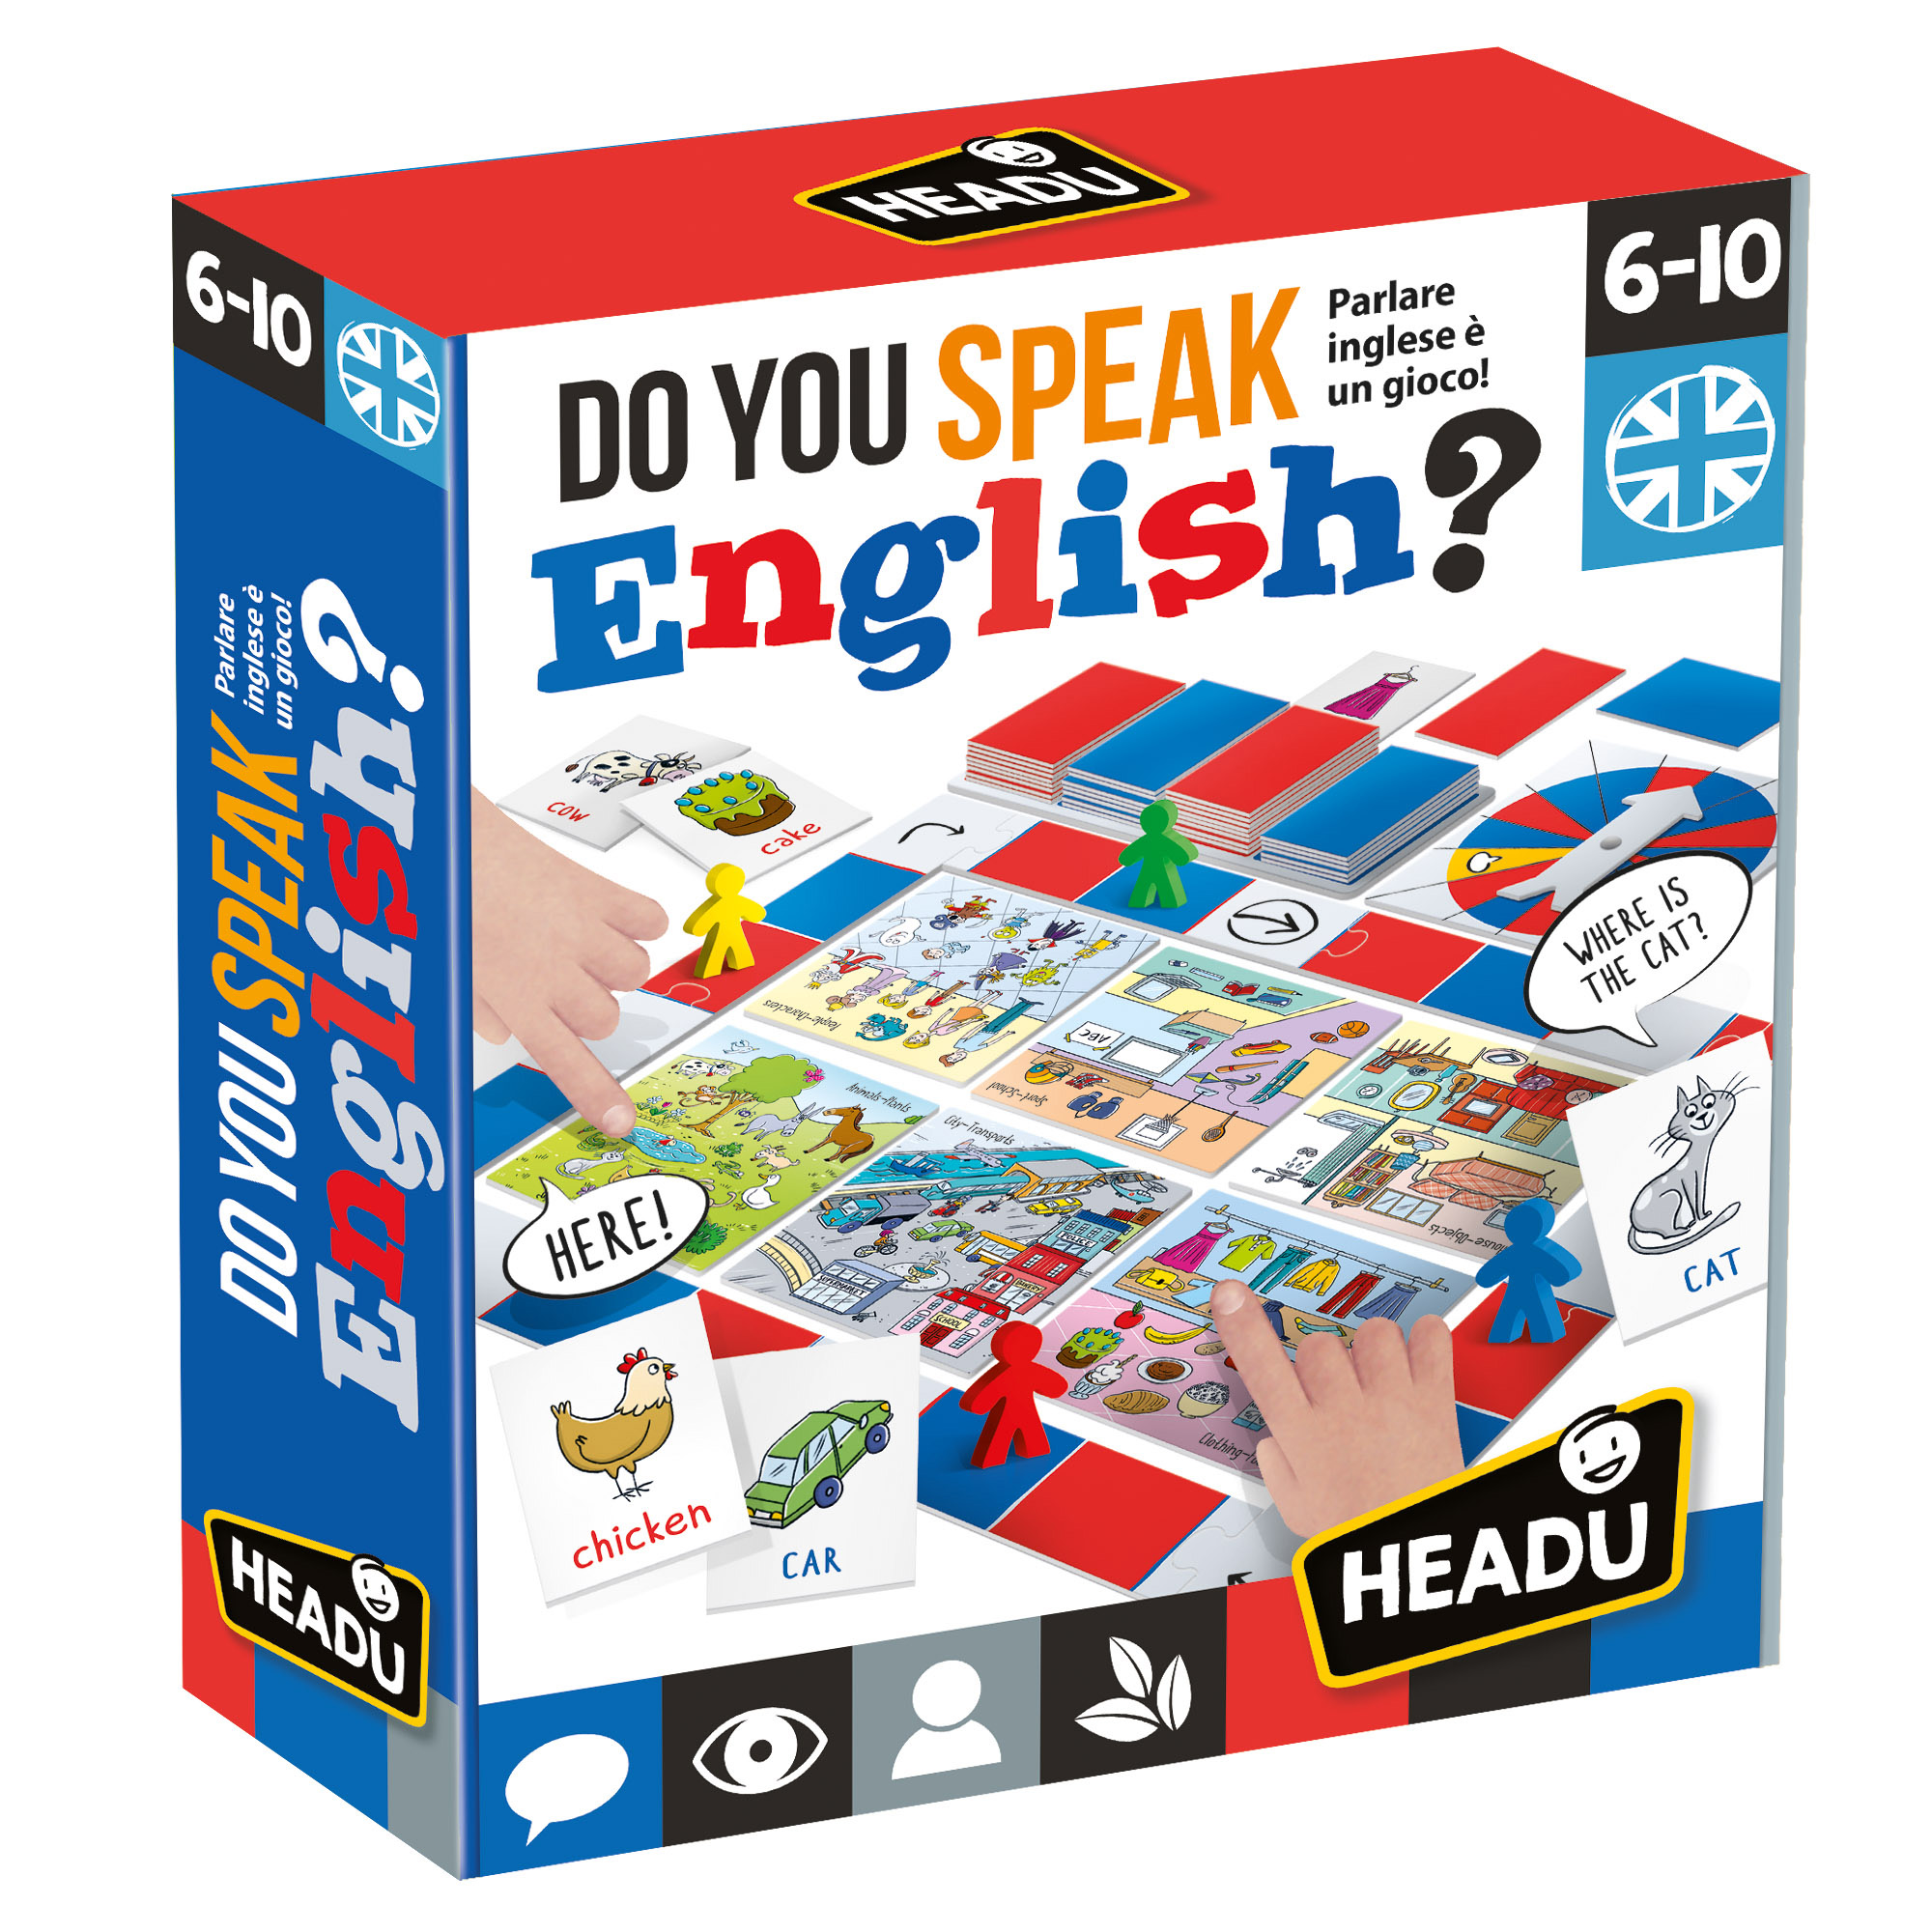 Do You Speak English - Headu